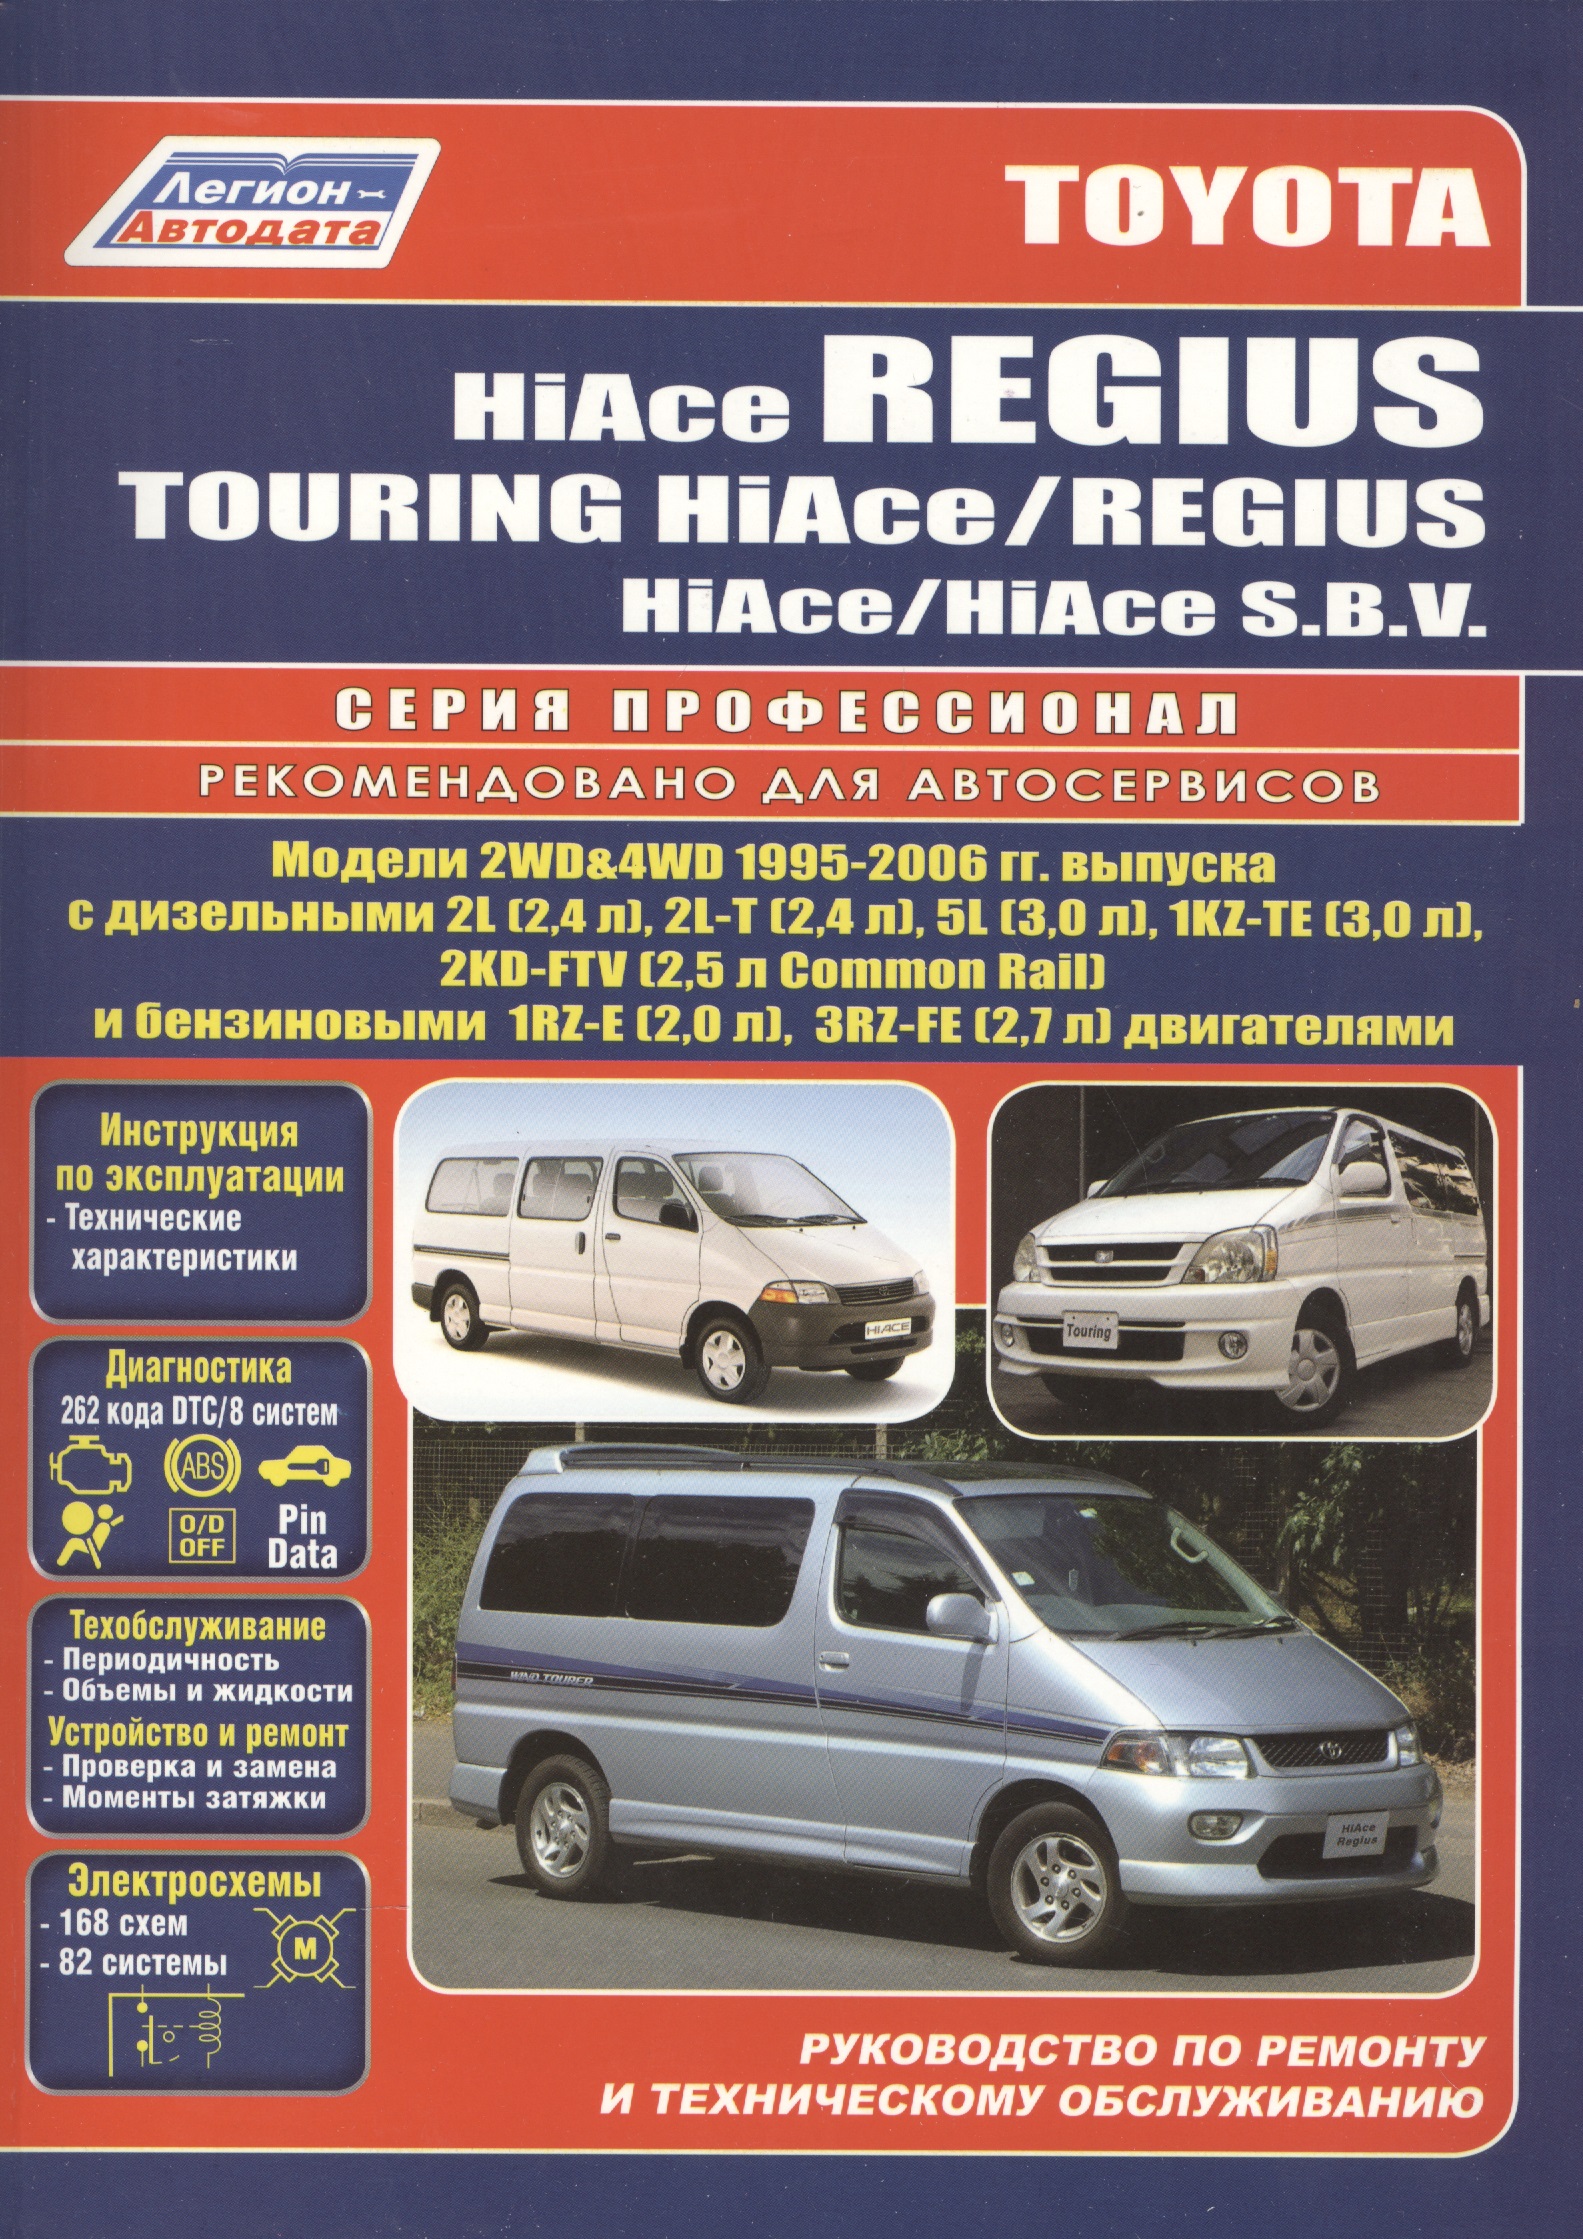 фигура для фингерпарка turbo фанбокс grass rail Toyota HiAce / Regius / HiAce SBV. Модели 2WD&4WD 1995-2006 гг. выпуска с дизельными 2L (2,4 л.), 2L-T (2,4 л.)… Руководство по ремонту и техническому обслуживанию автомобилей.